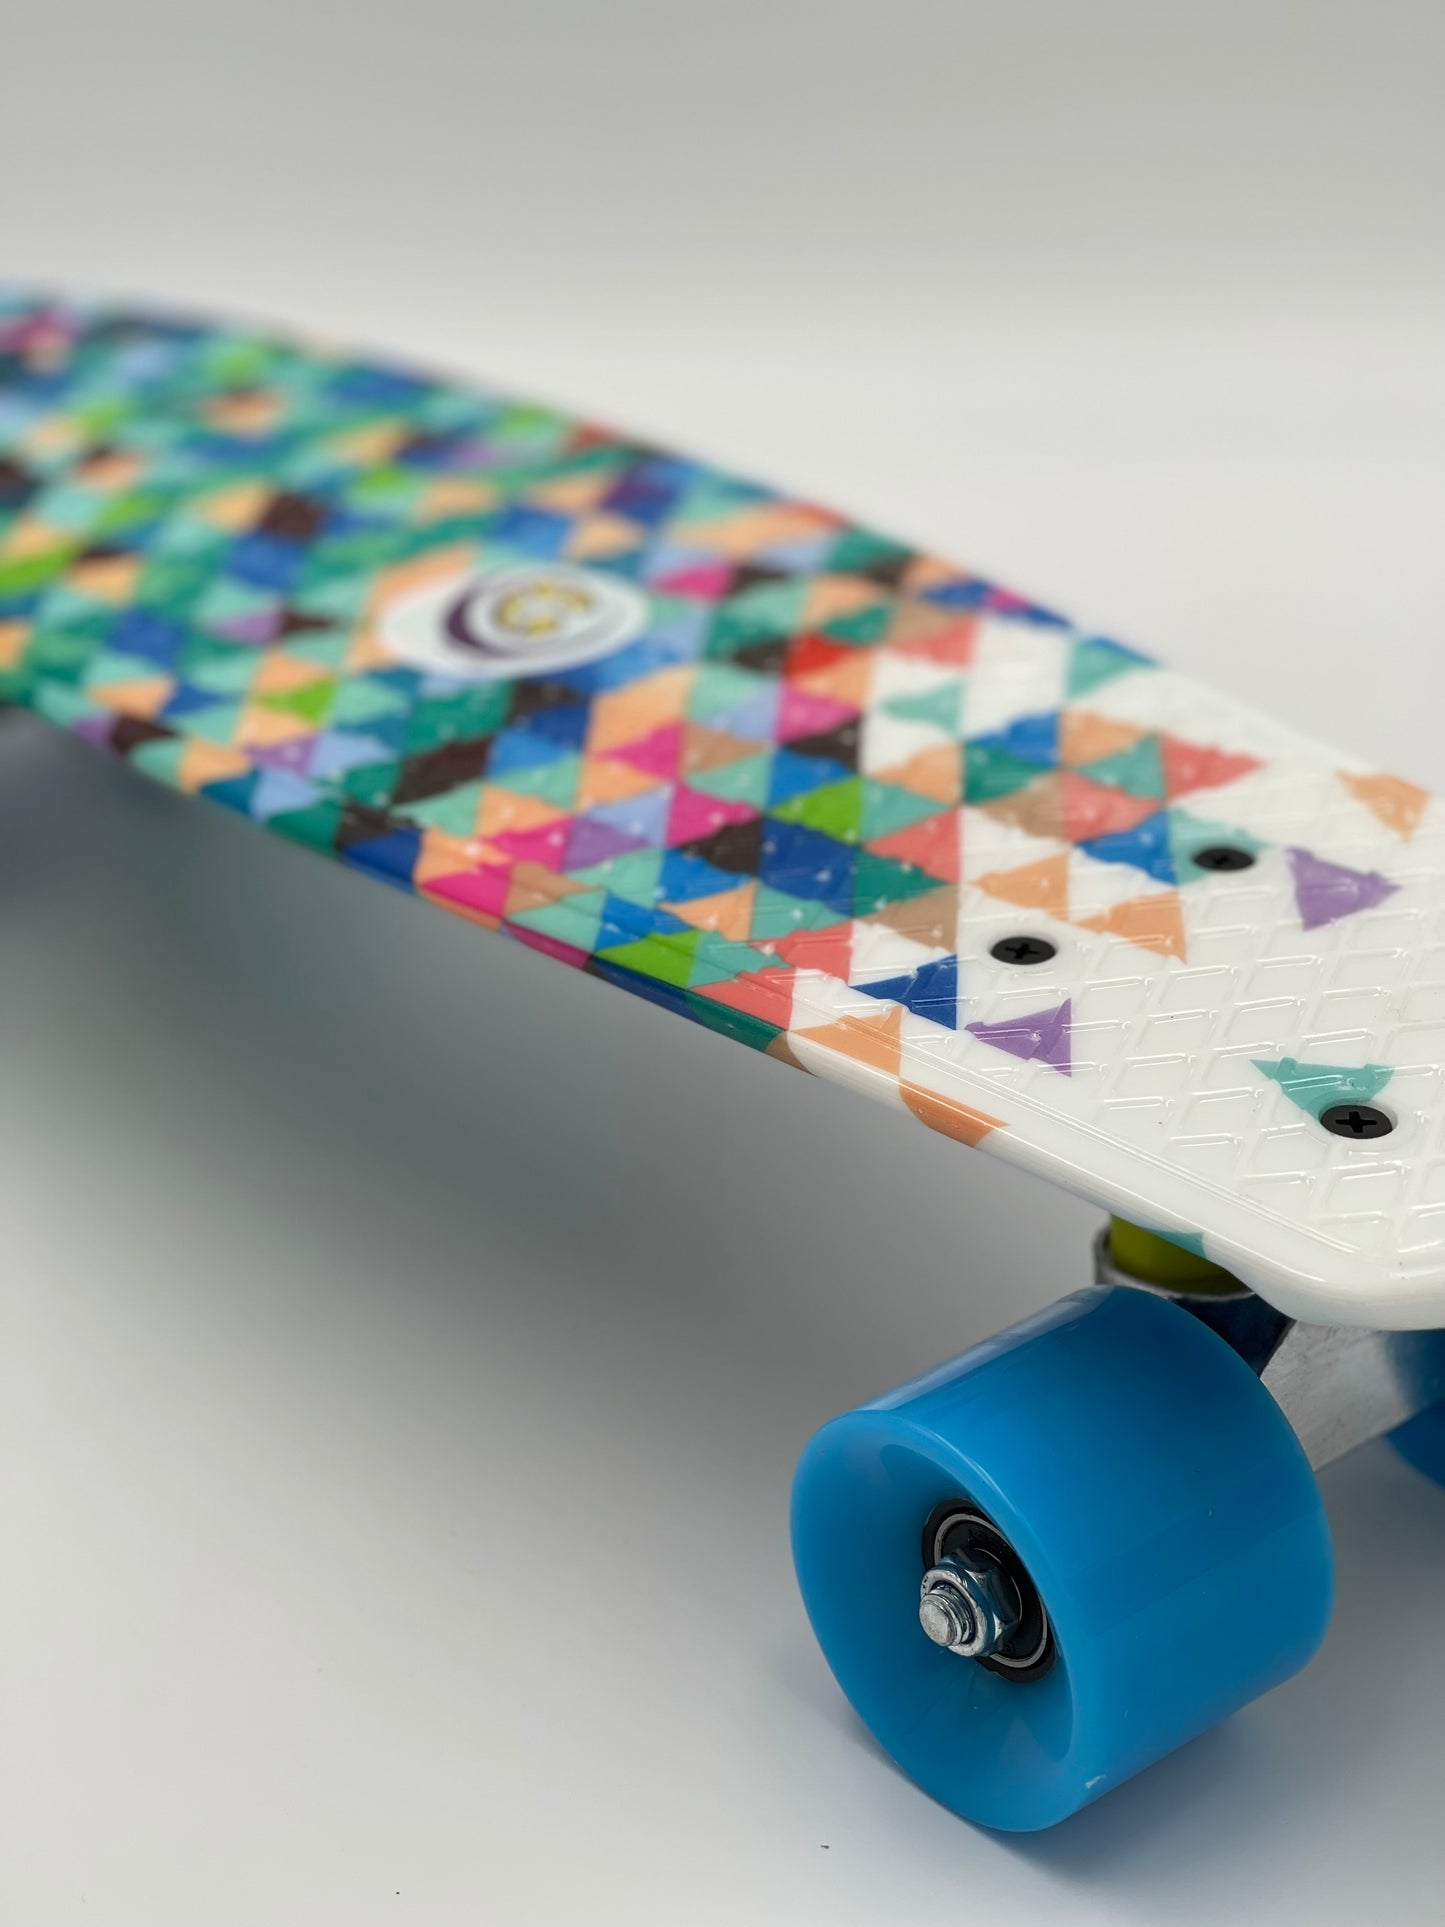 Penny Blau Gaudi Omni Skateboard